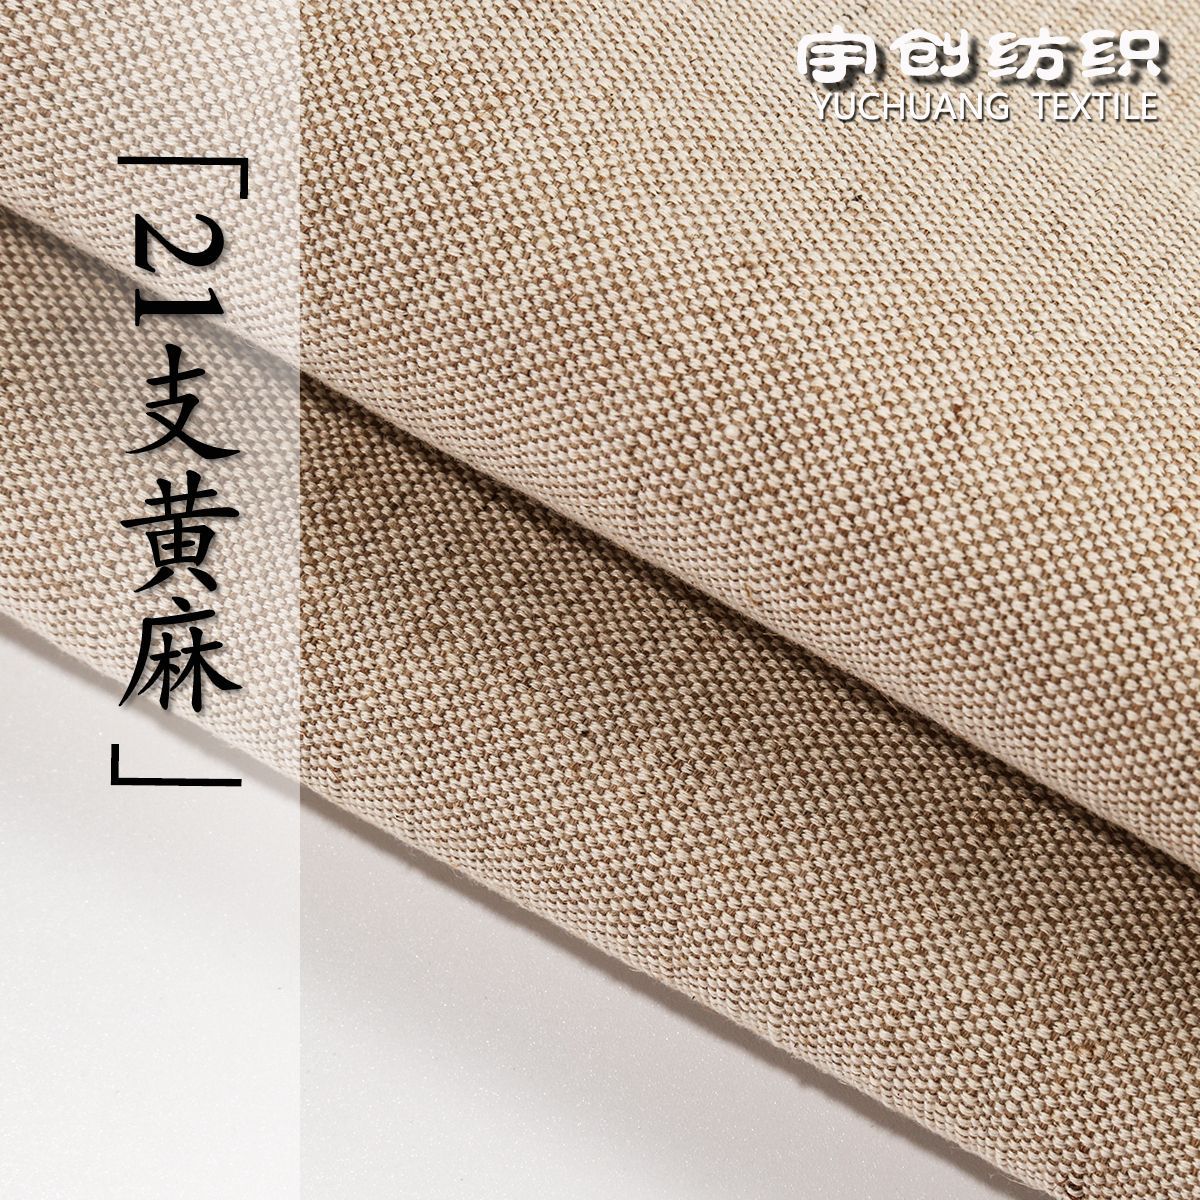 21支黄麻棉荞麦麻布时尚高档手袋布艺沙发包装盒工艺品装饰面料